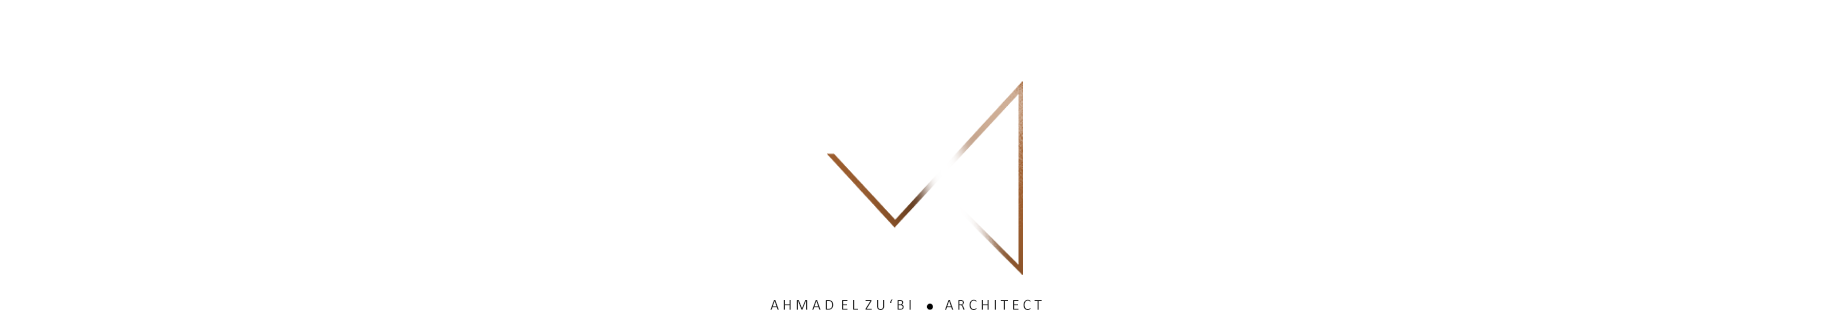 Ahmad Zu'bi のプロファイルバナー